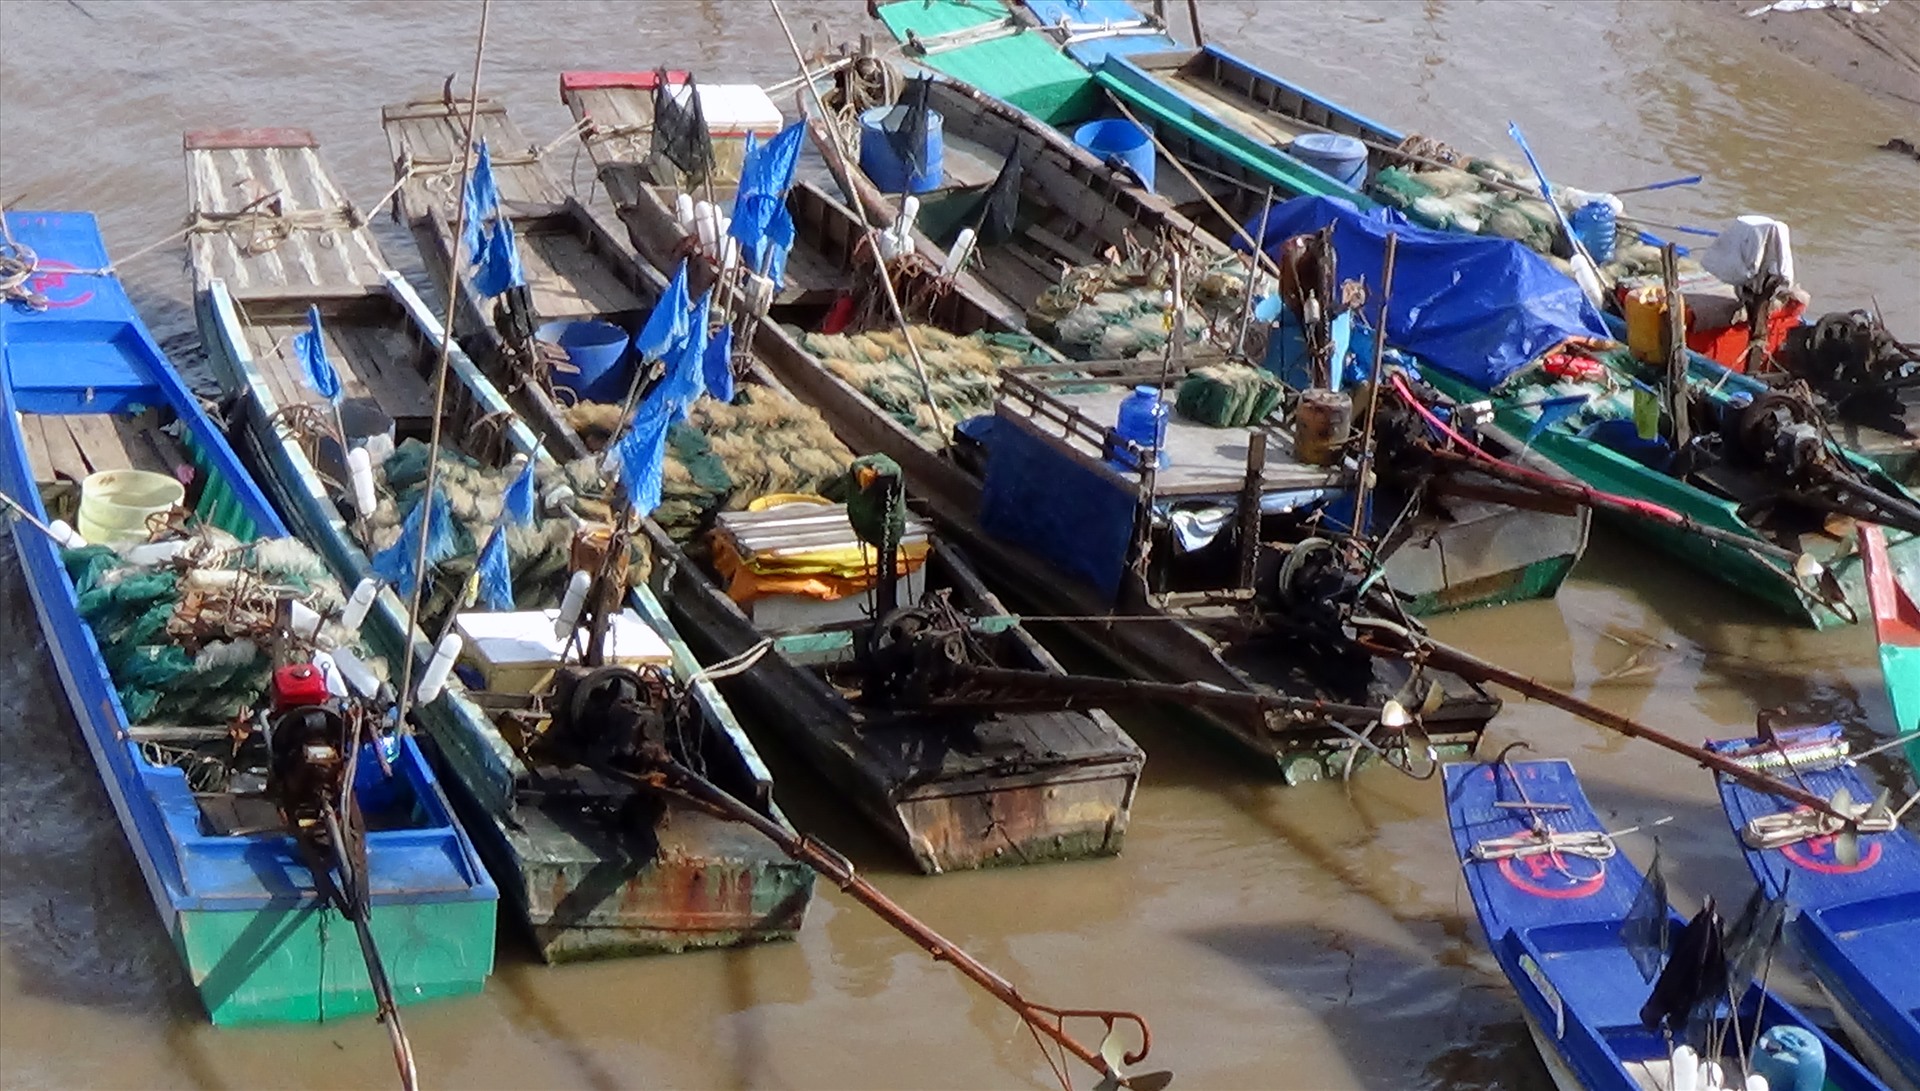 Nhiều phương tiện đánh bắt thủy sản tại Bạc Liêu chỉ đơn sơ thế này (ảnh Nhật Hồ)